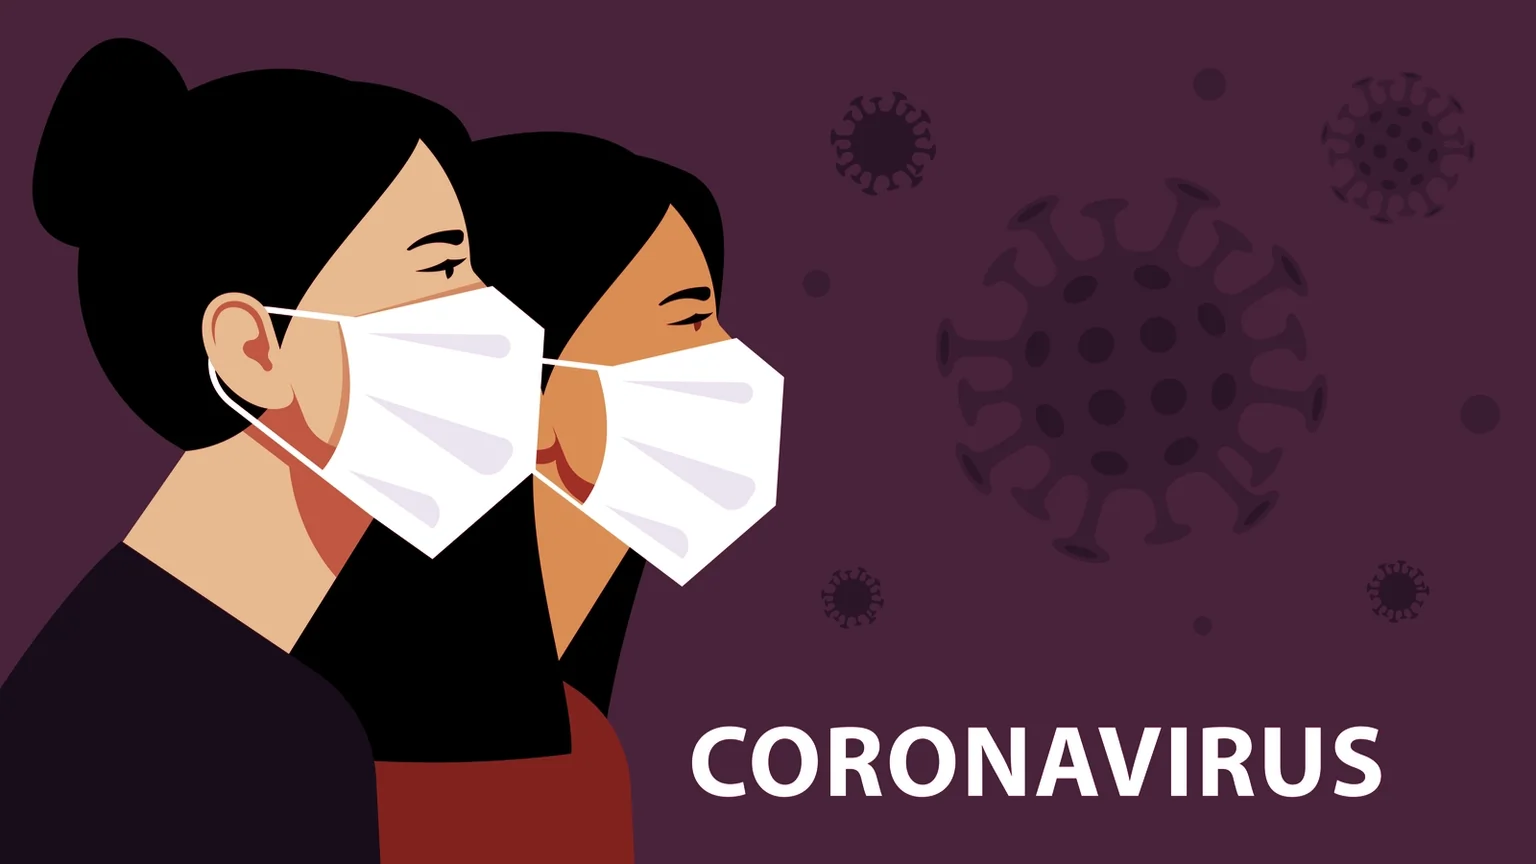 The coronavirus is hitting Chinese business hard.